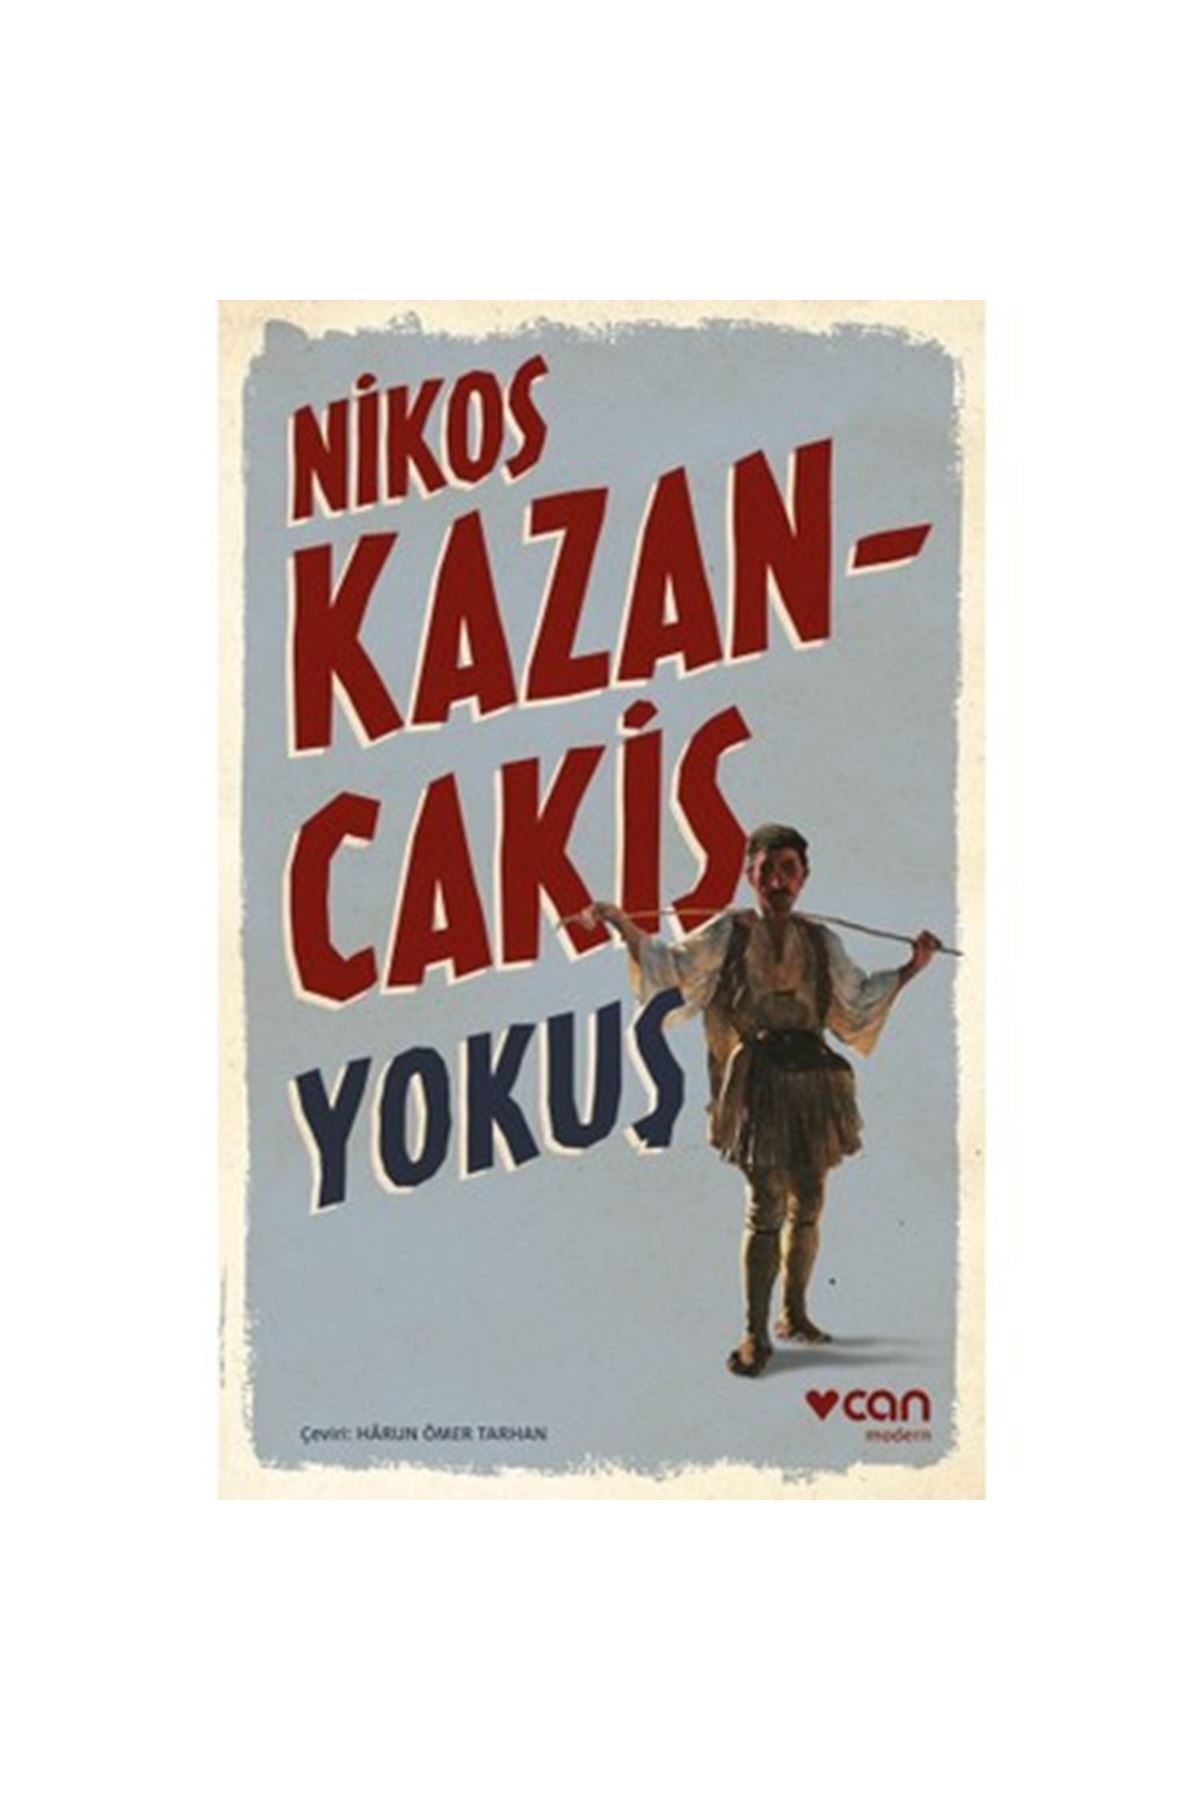 NIKOS KAZAN-CAKİS - YOKUS